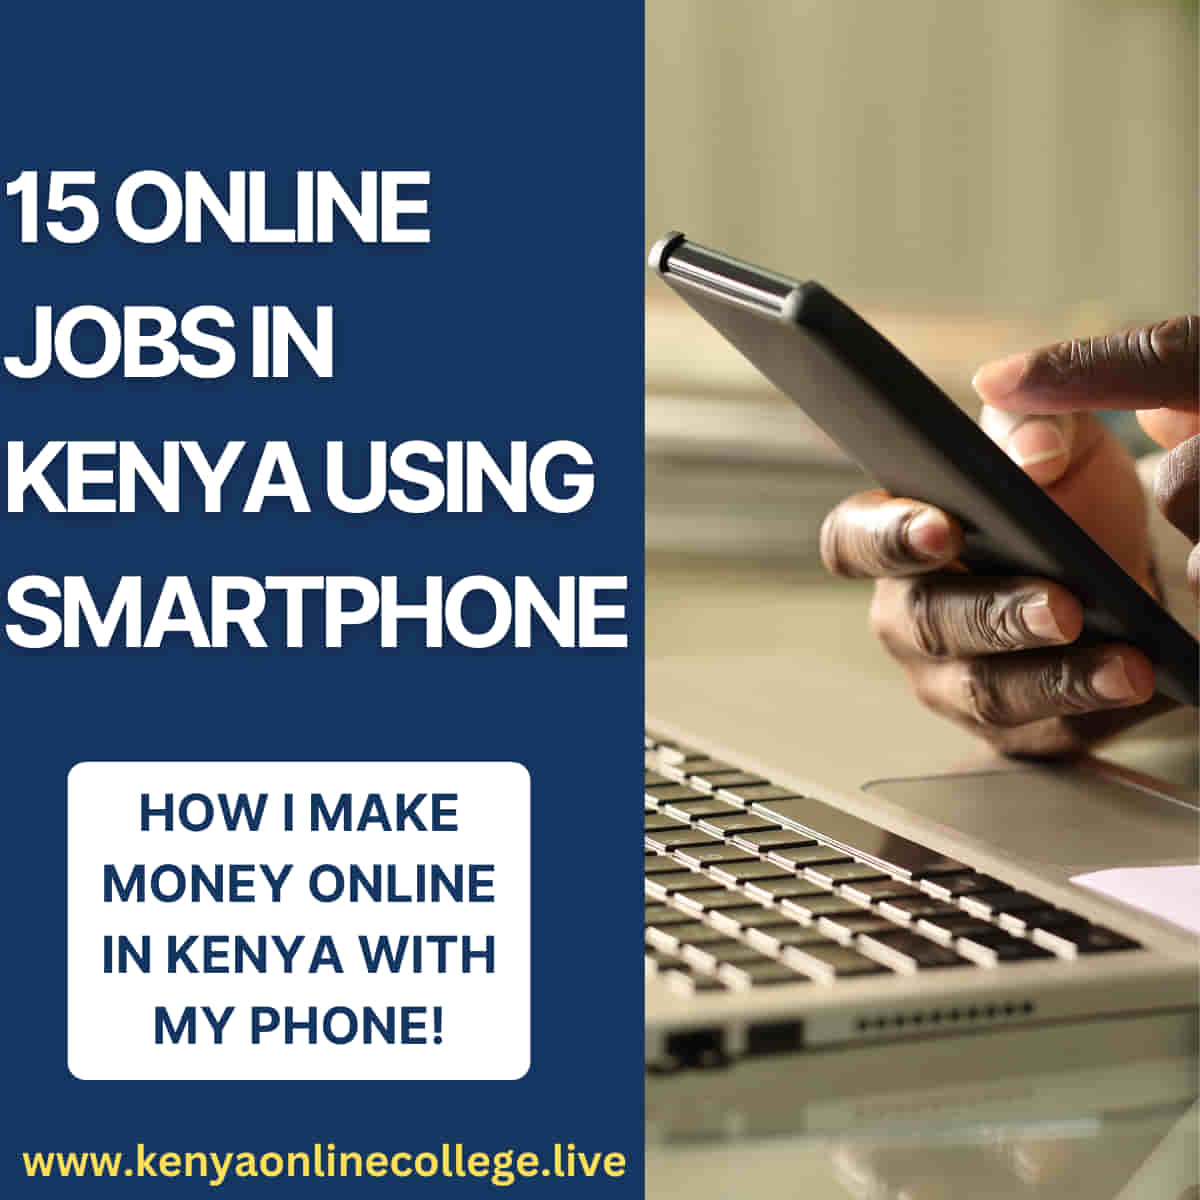 online jobs in Kenya using smartphone